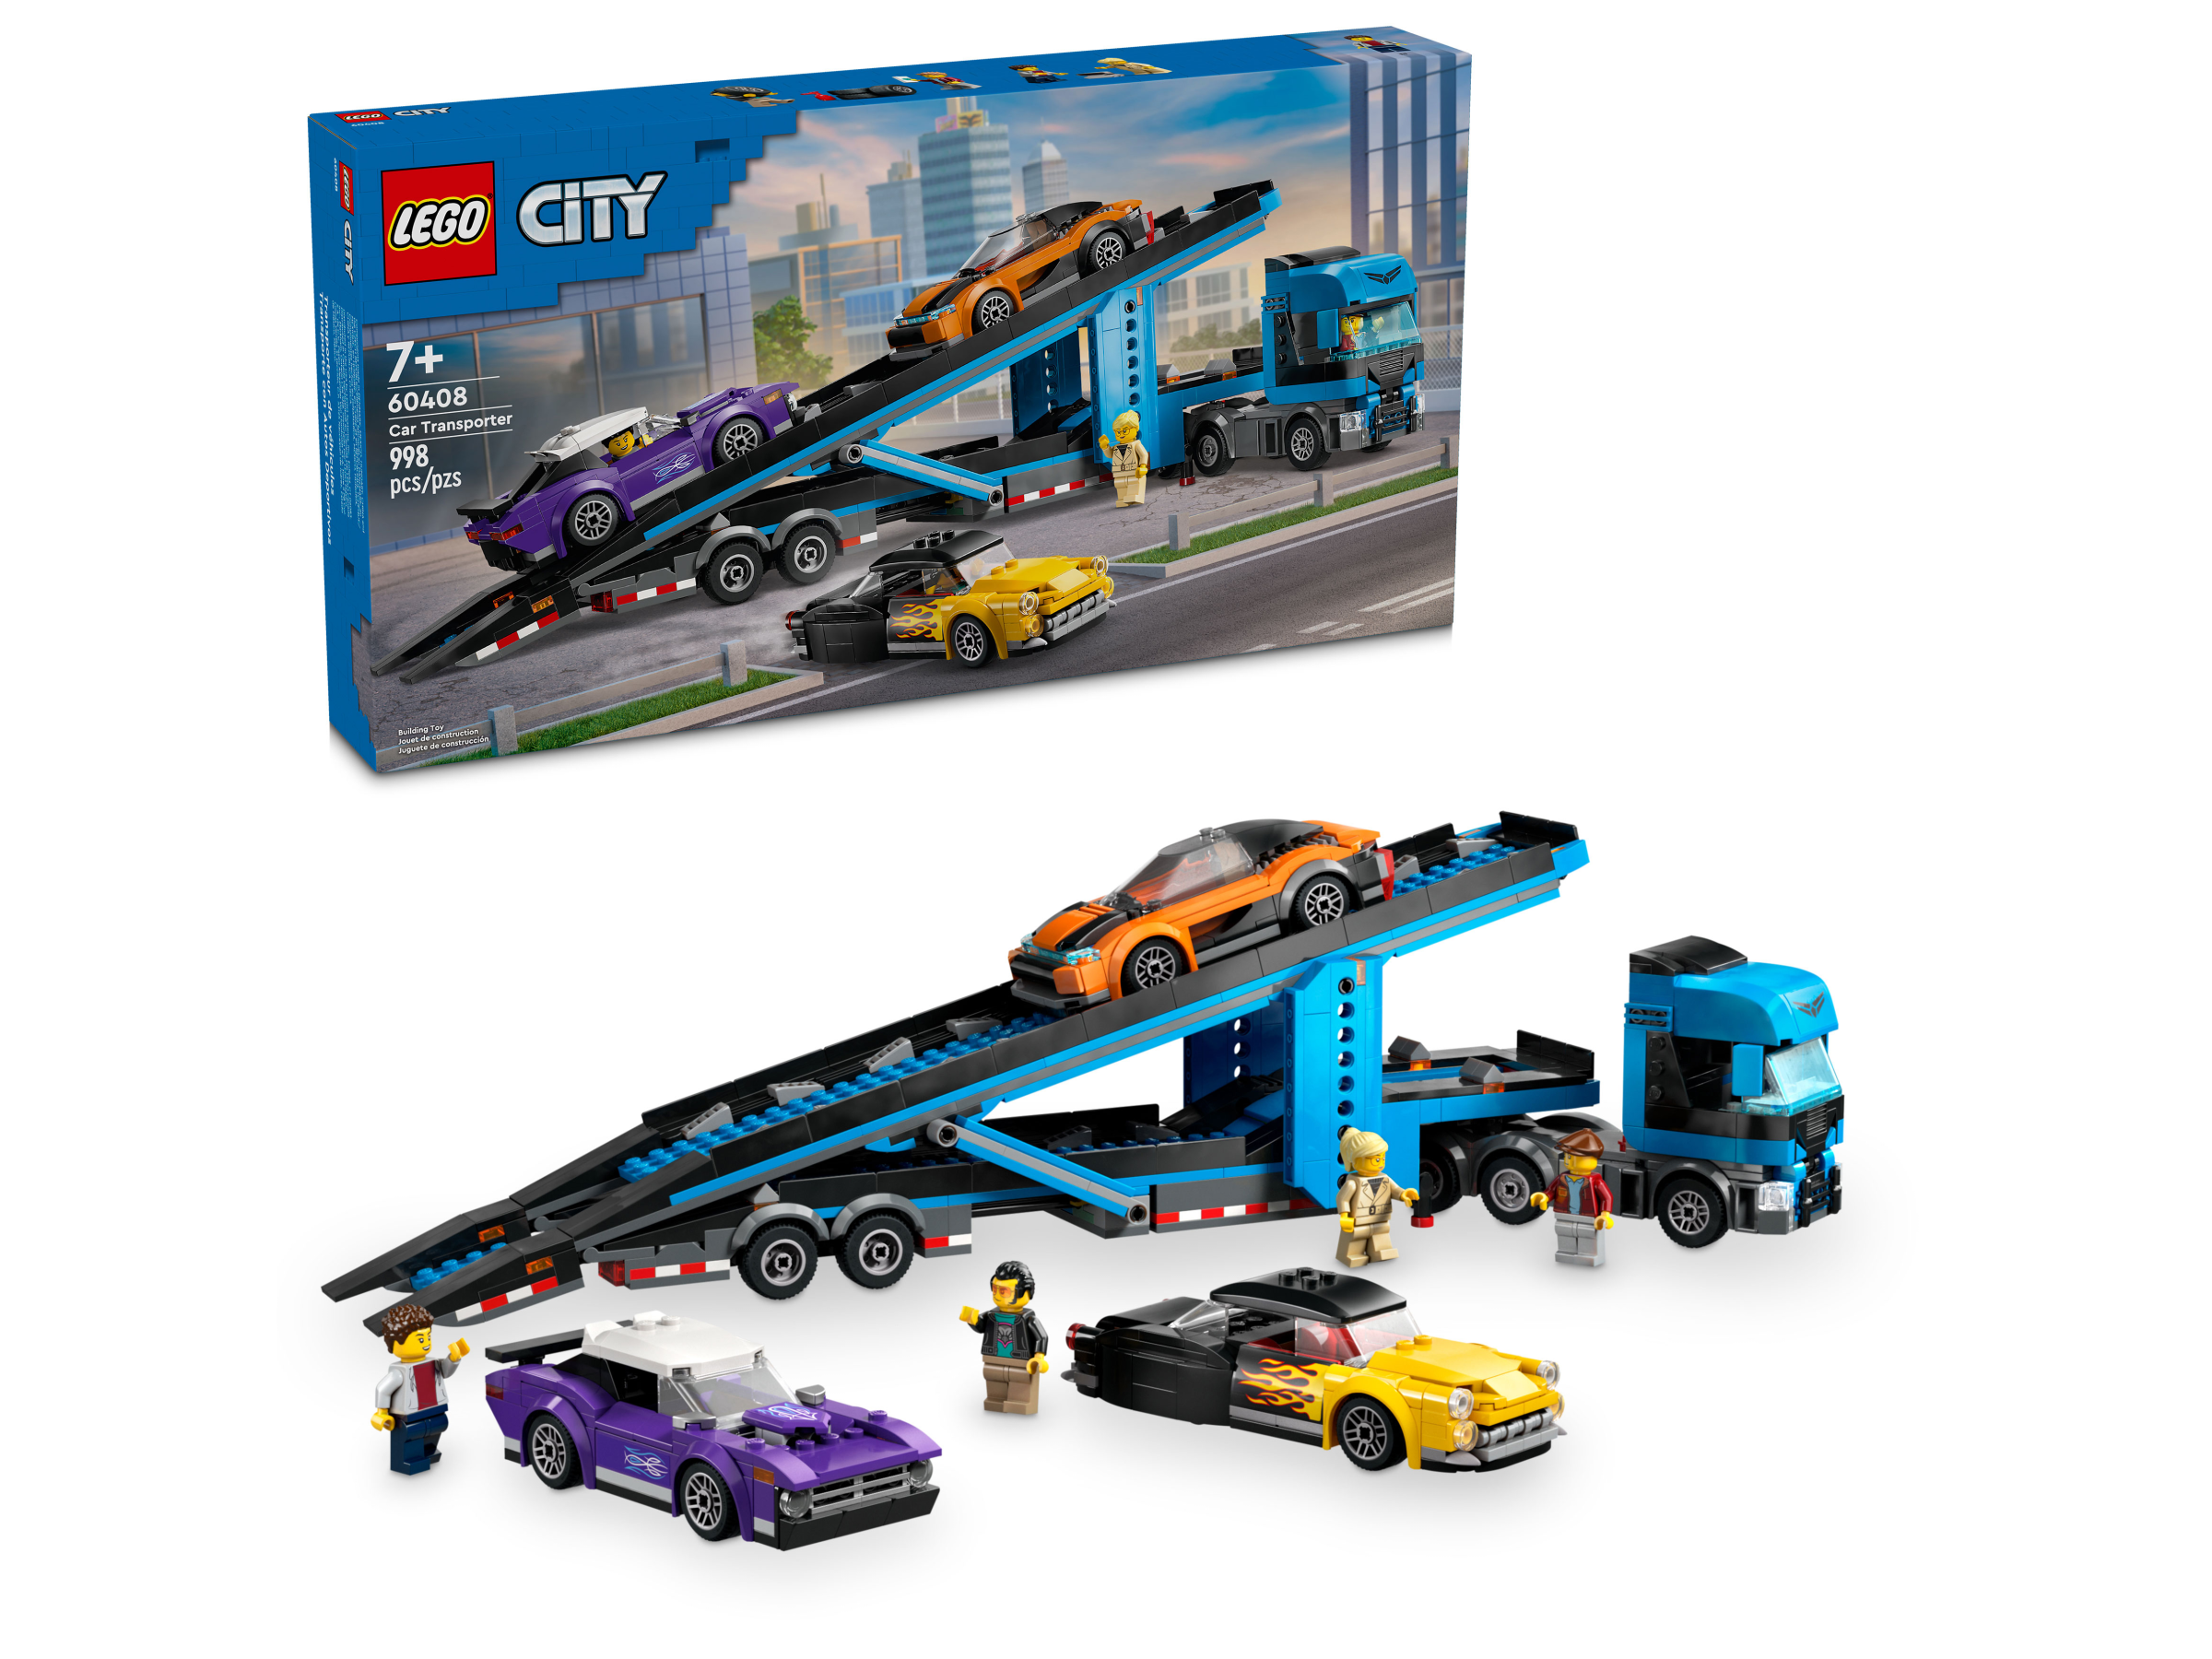 LEGO 60408 CAMION TRASPORTATORE CON AUTO SPORTIVE CITY